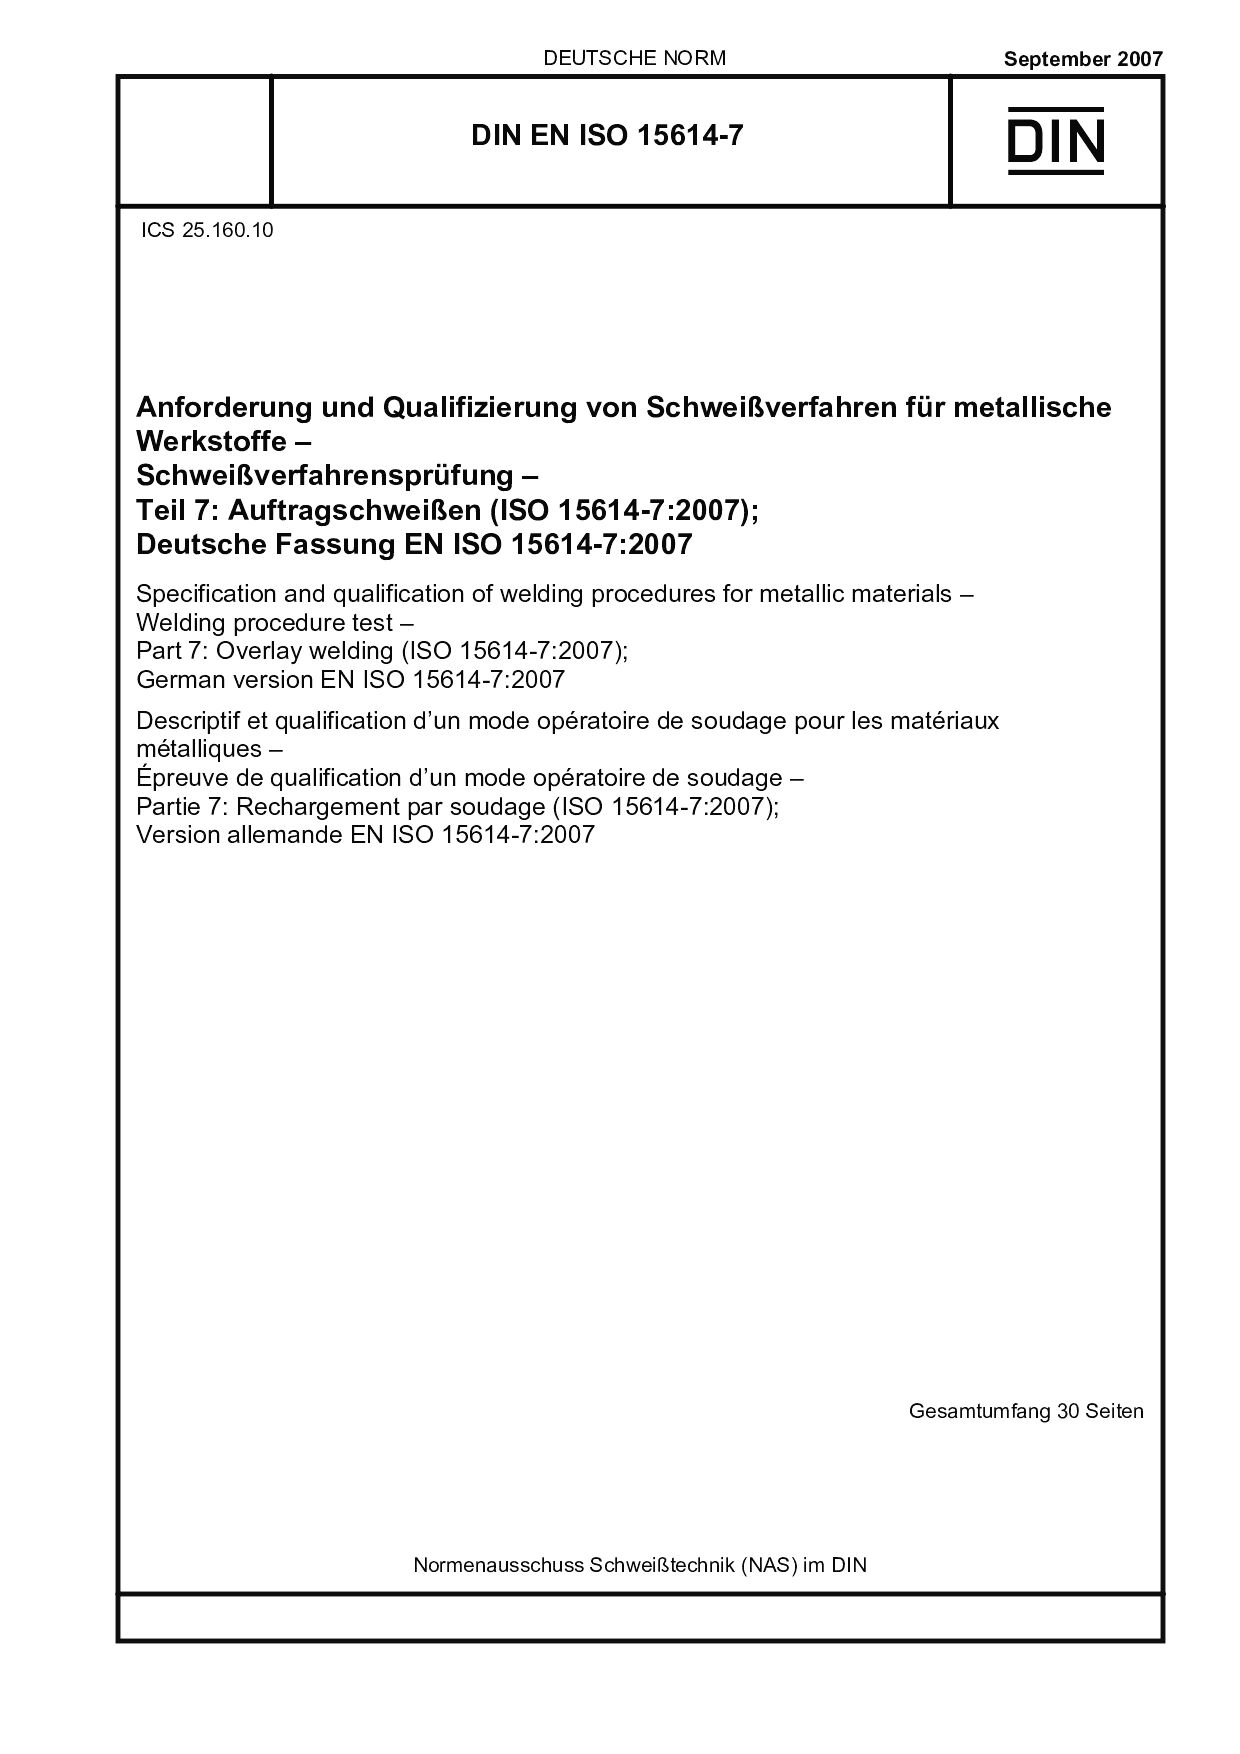 DIN EN ISO 15614-7:2007封面图